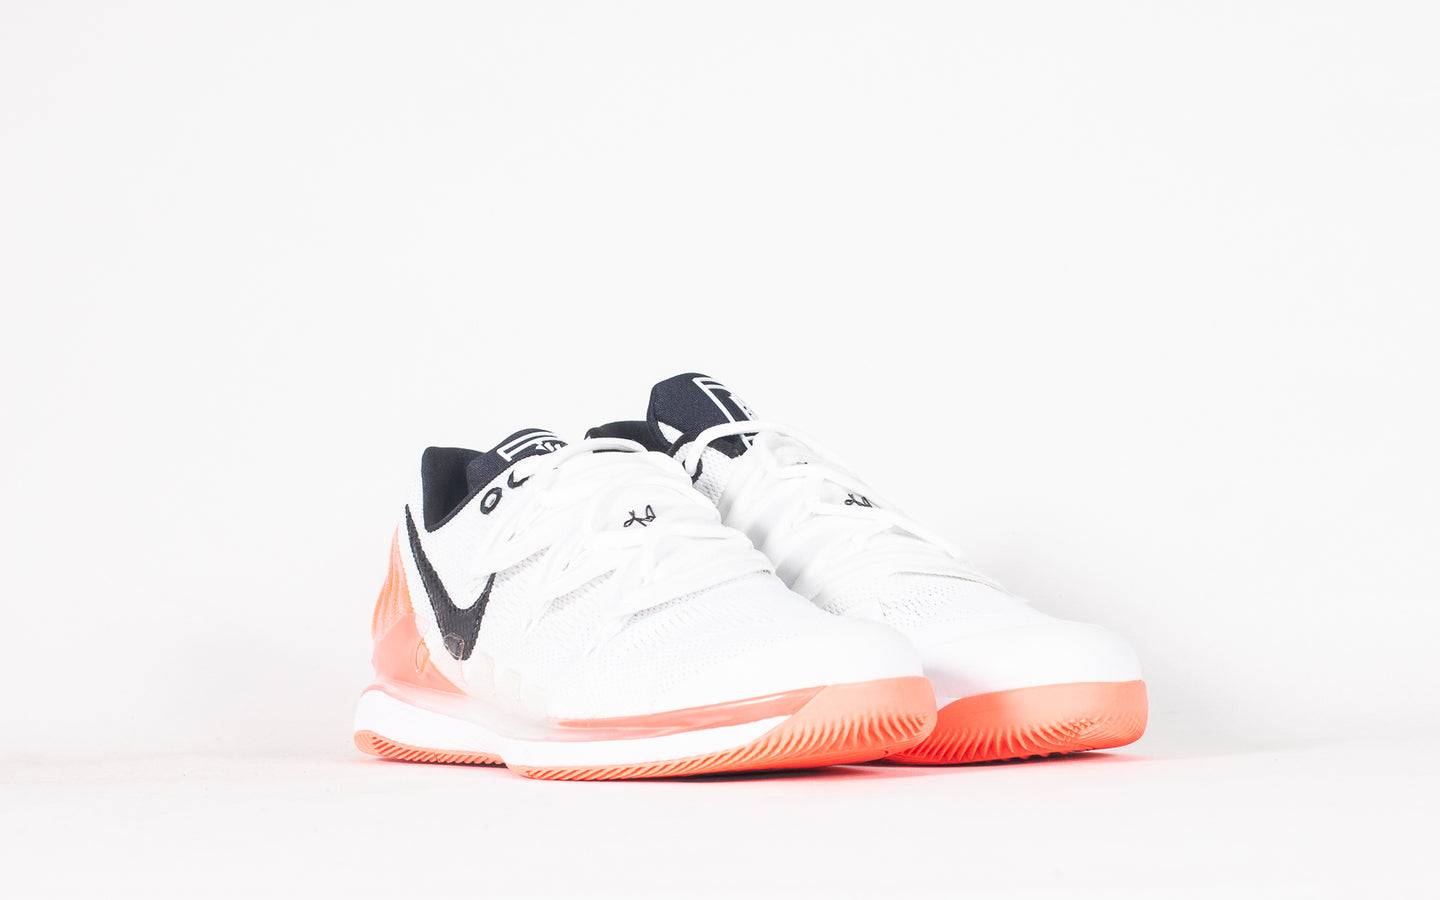 Comprar Nike Kyrie 5 'Friends' Zapatillas Baloncesto y mucho